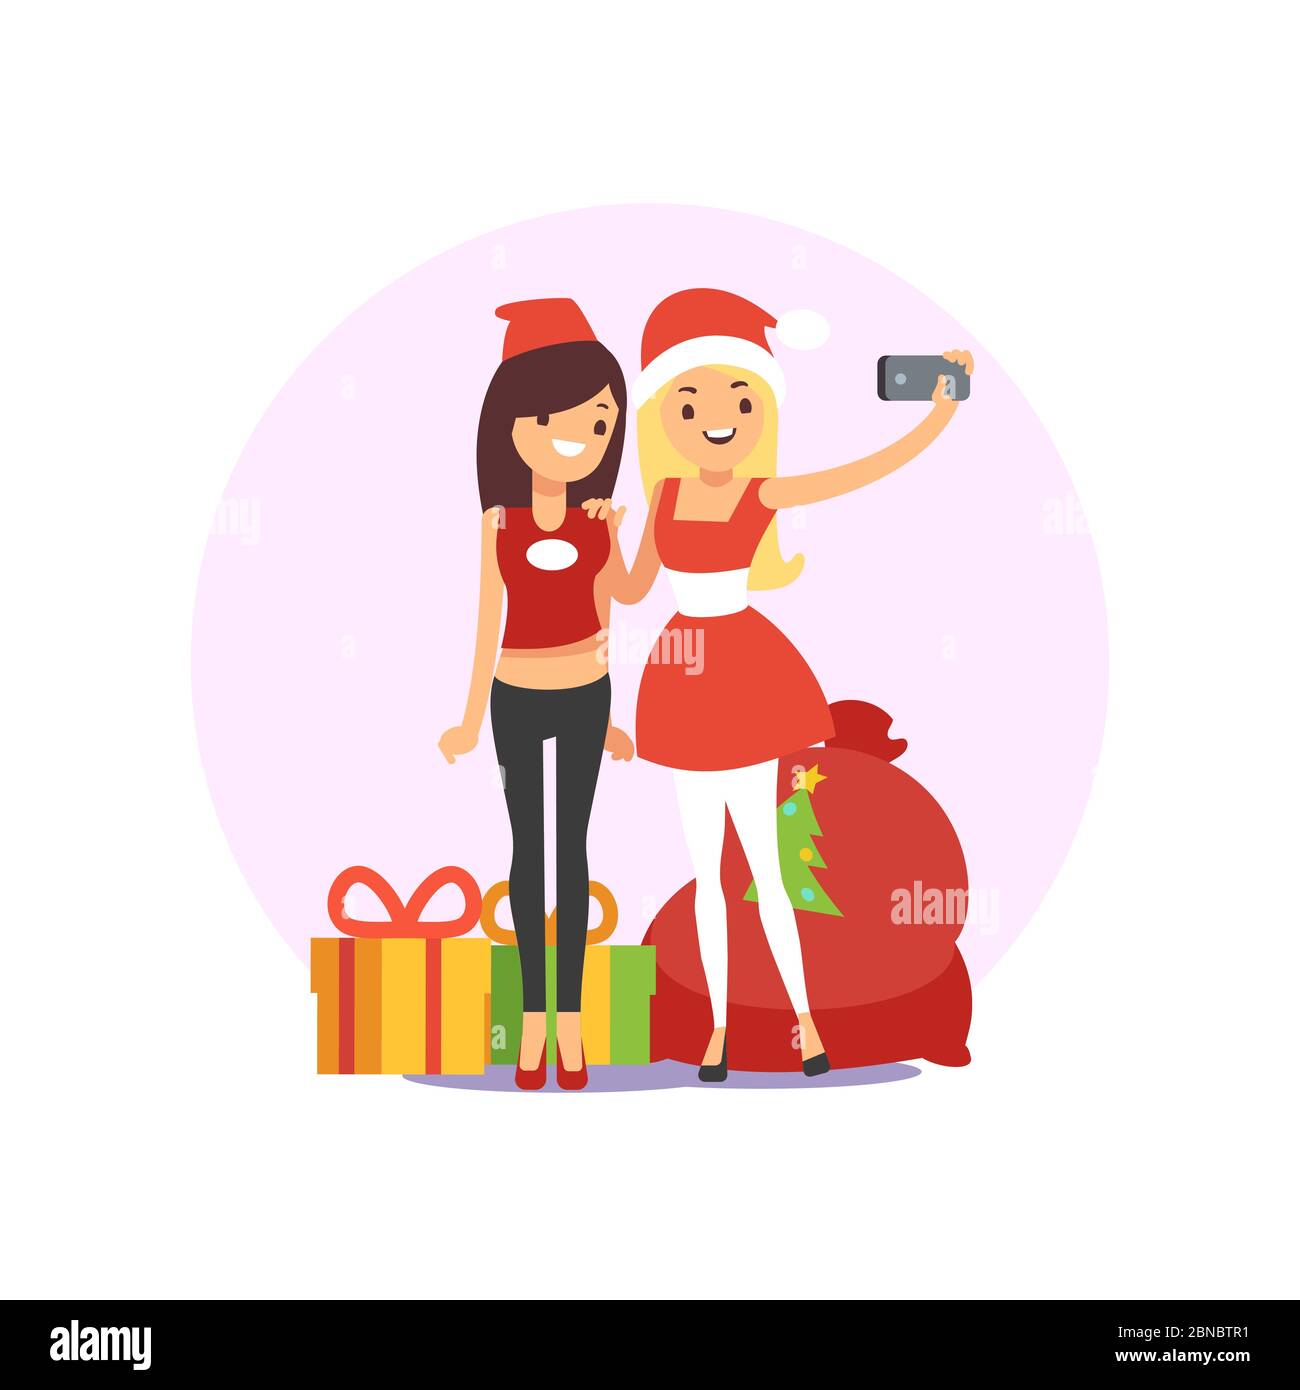 Glücklich lächelnde junge Frauen Freunde unter Selfie-Foto auf Weihnachtsfeier Vektor-Illustration isoliert auf weiß Stock Vektor